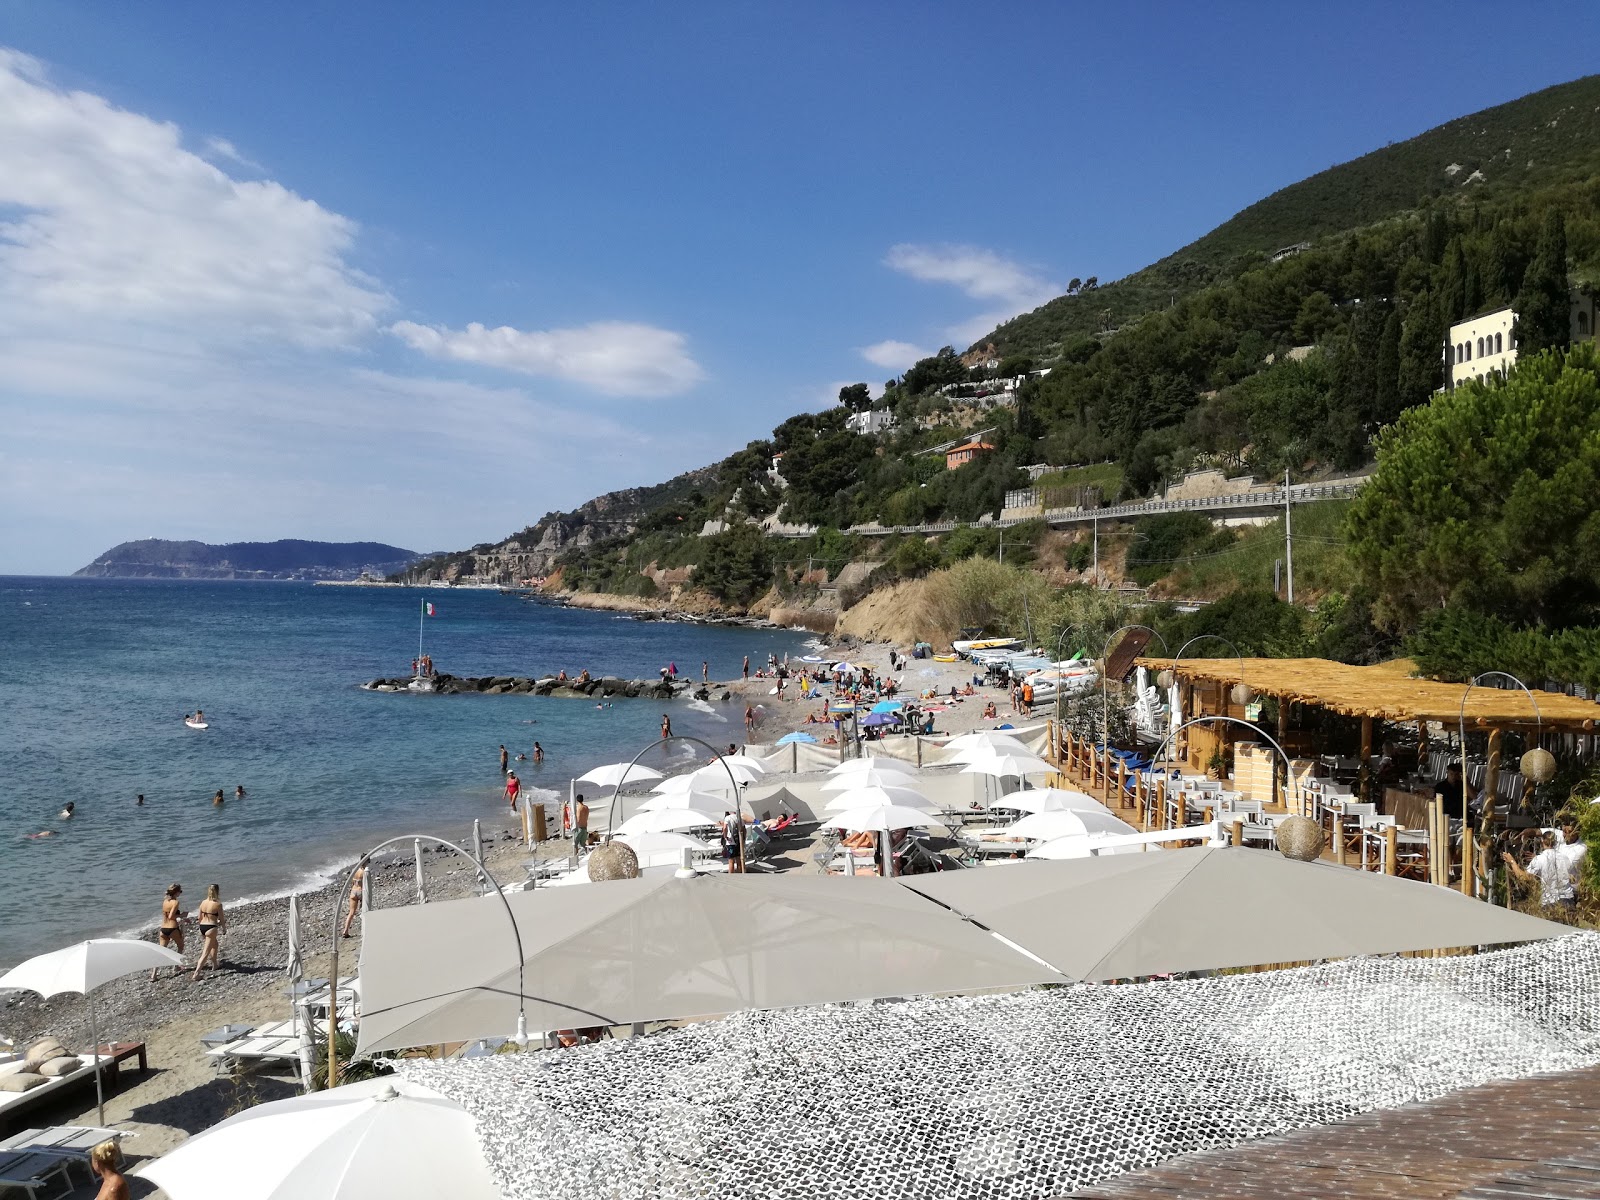 Fotografie cu Spiaggia libera Alassio cu nivelul de curățenie in medie